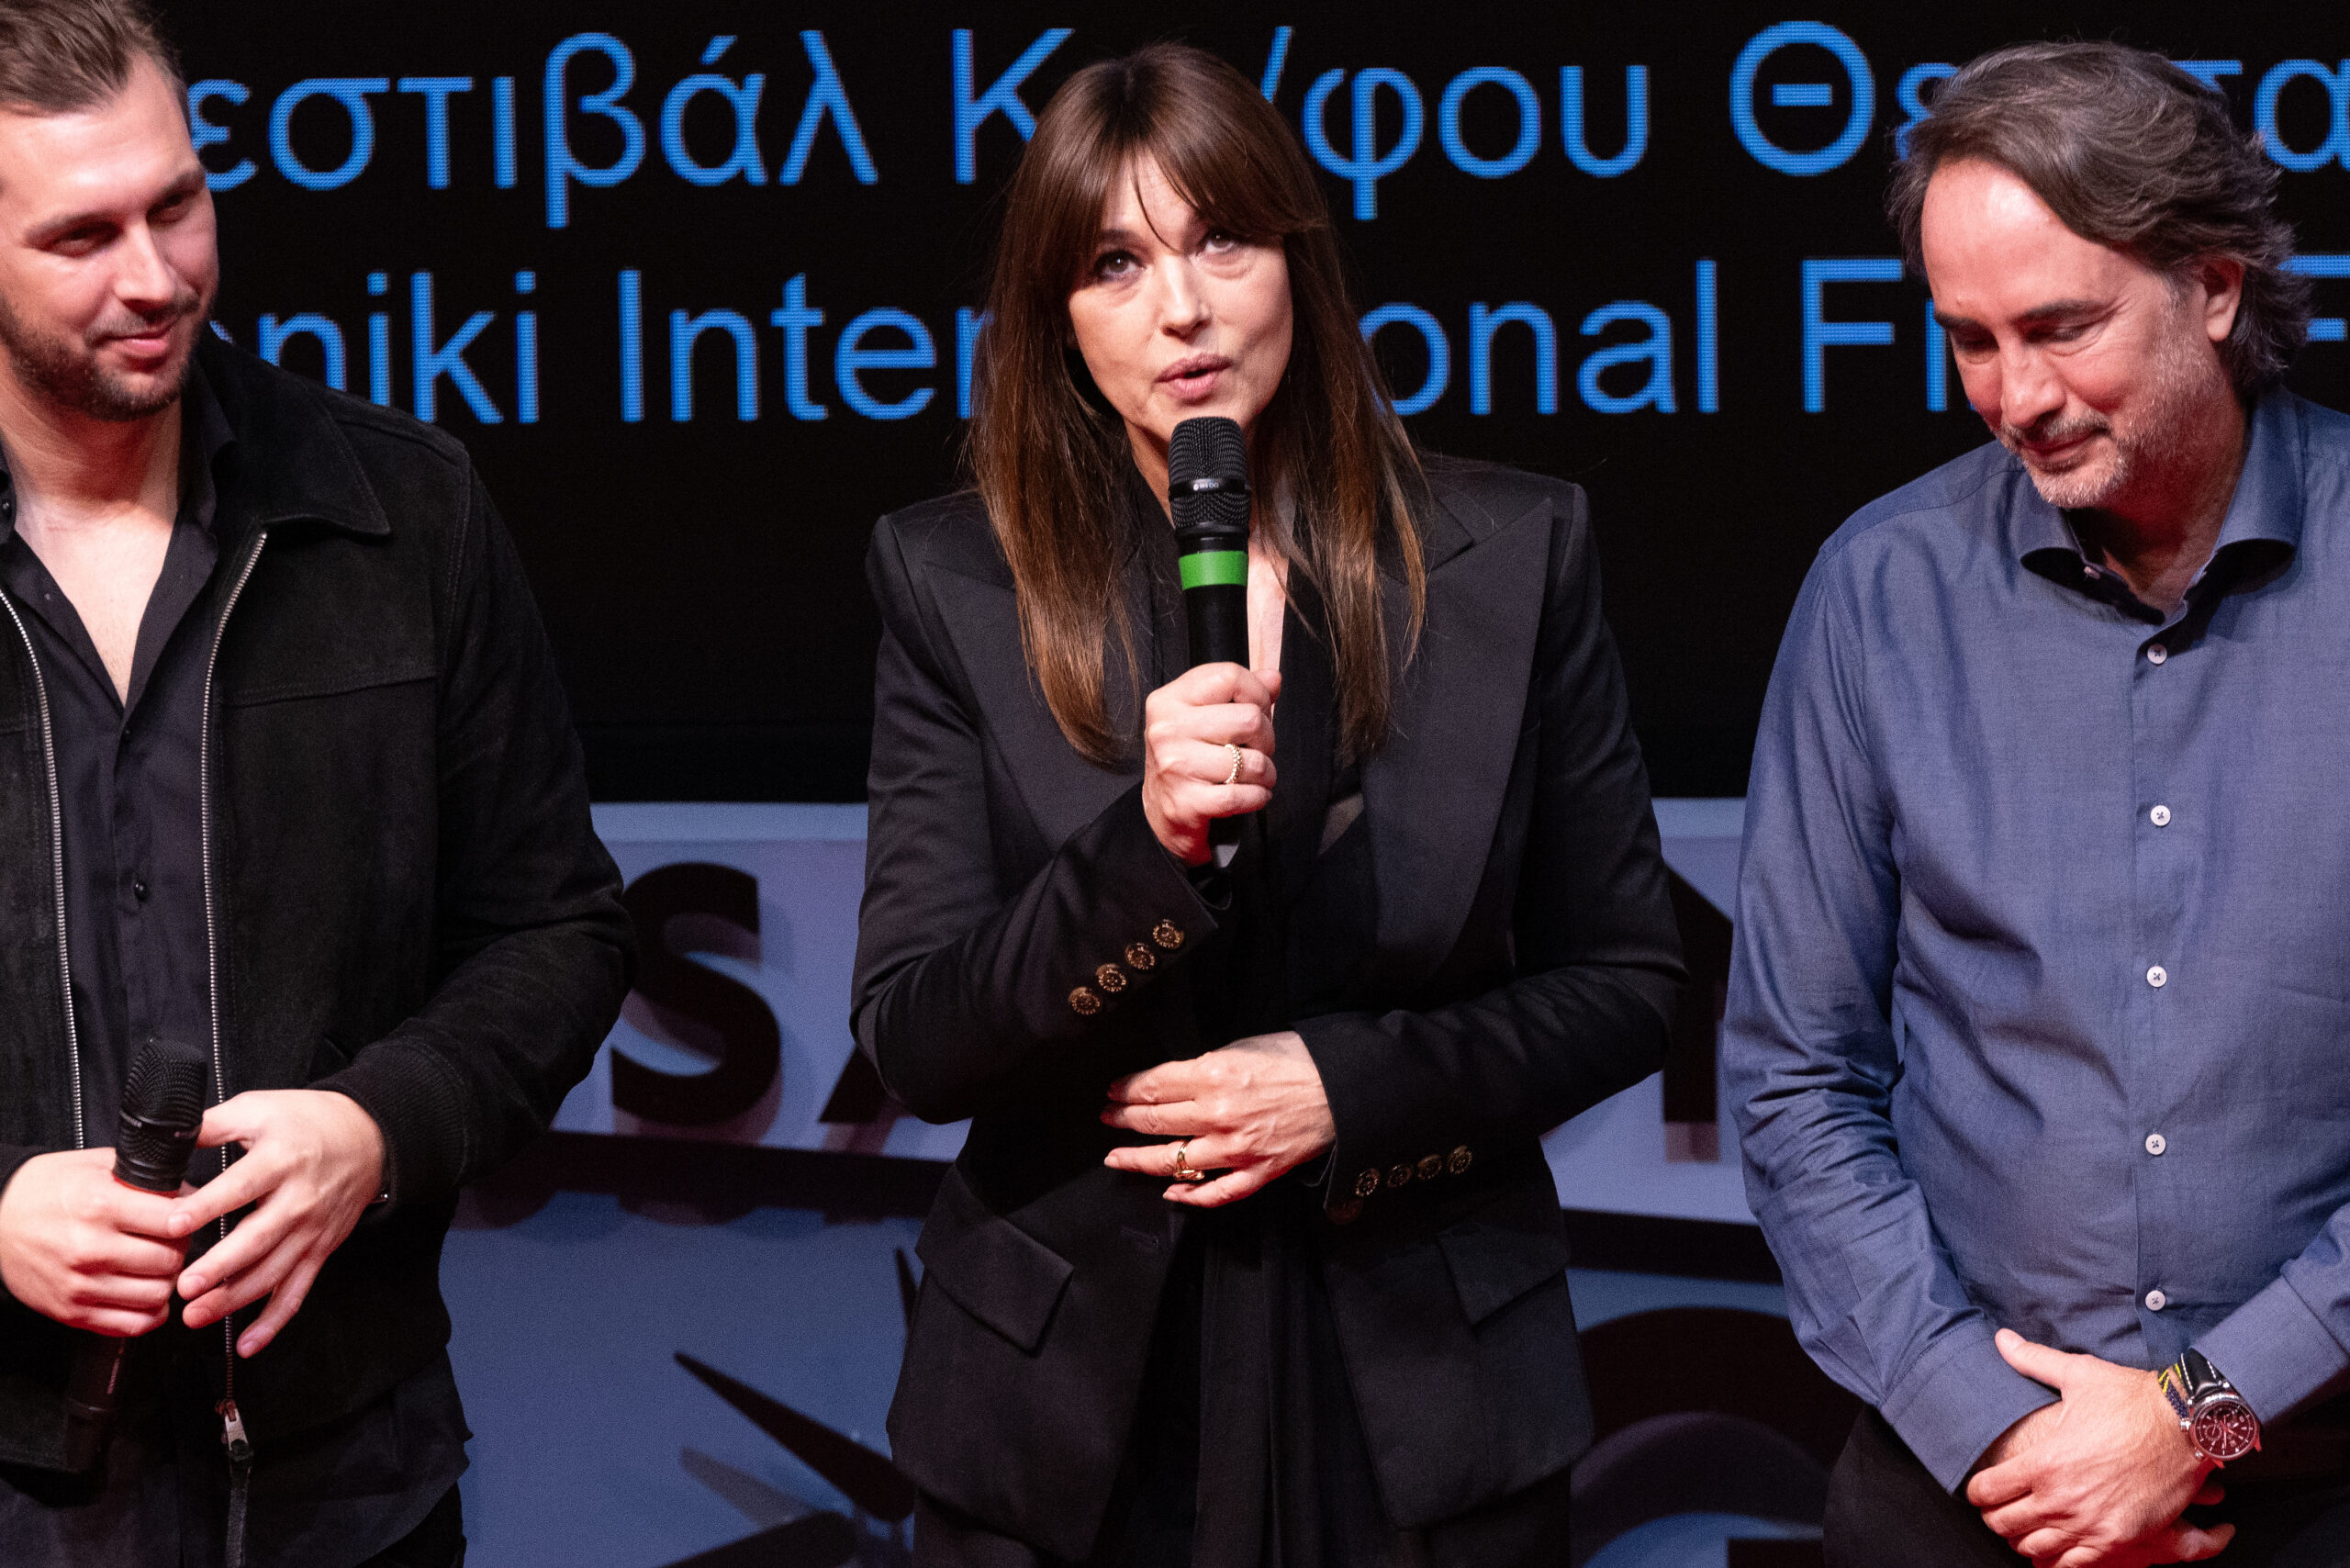 64ο Φεστιβάλ Κινηματογράφου Θεσσαλονίκης: Η Μόνικα Μπελούτσι έφτασε στο Ολύμπιον - "Η Ελλάδα είναι βαθιά στην καρδιά μου"